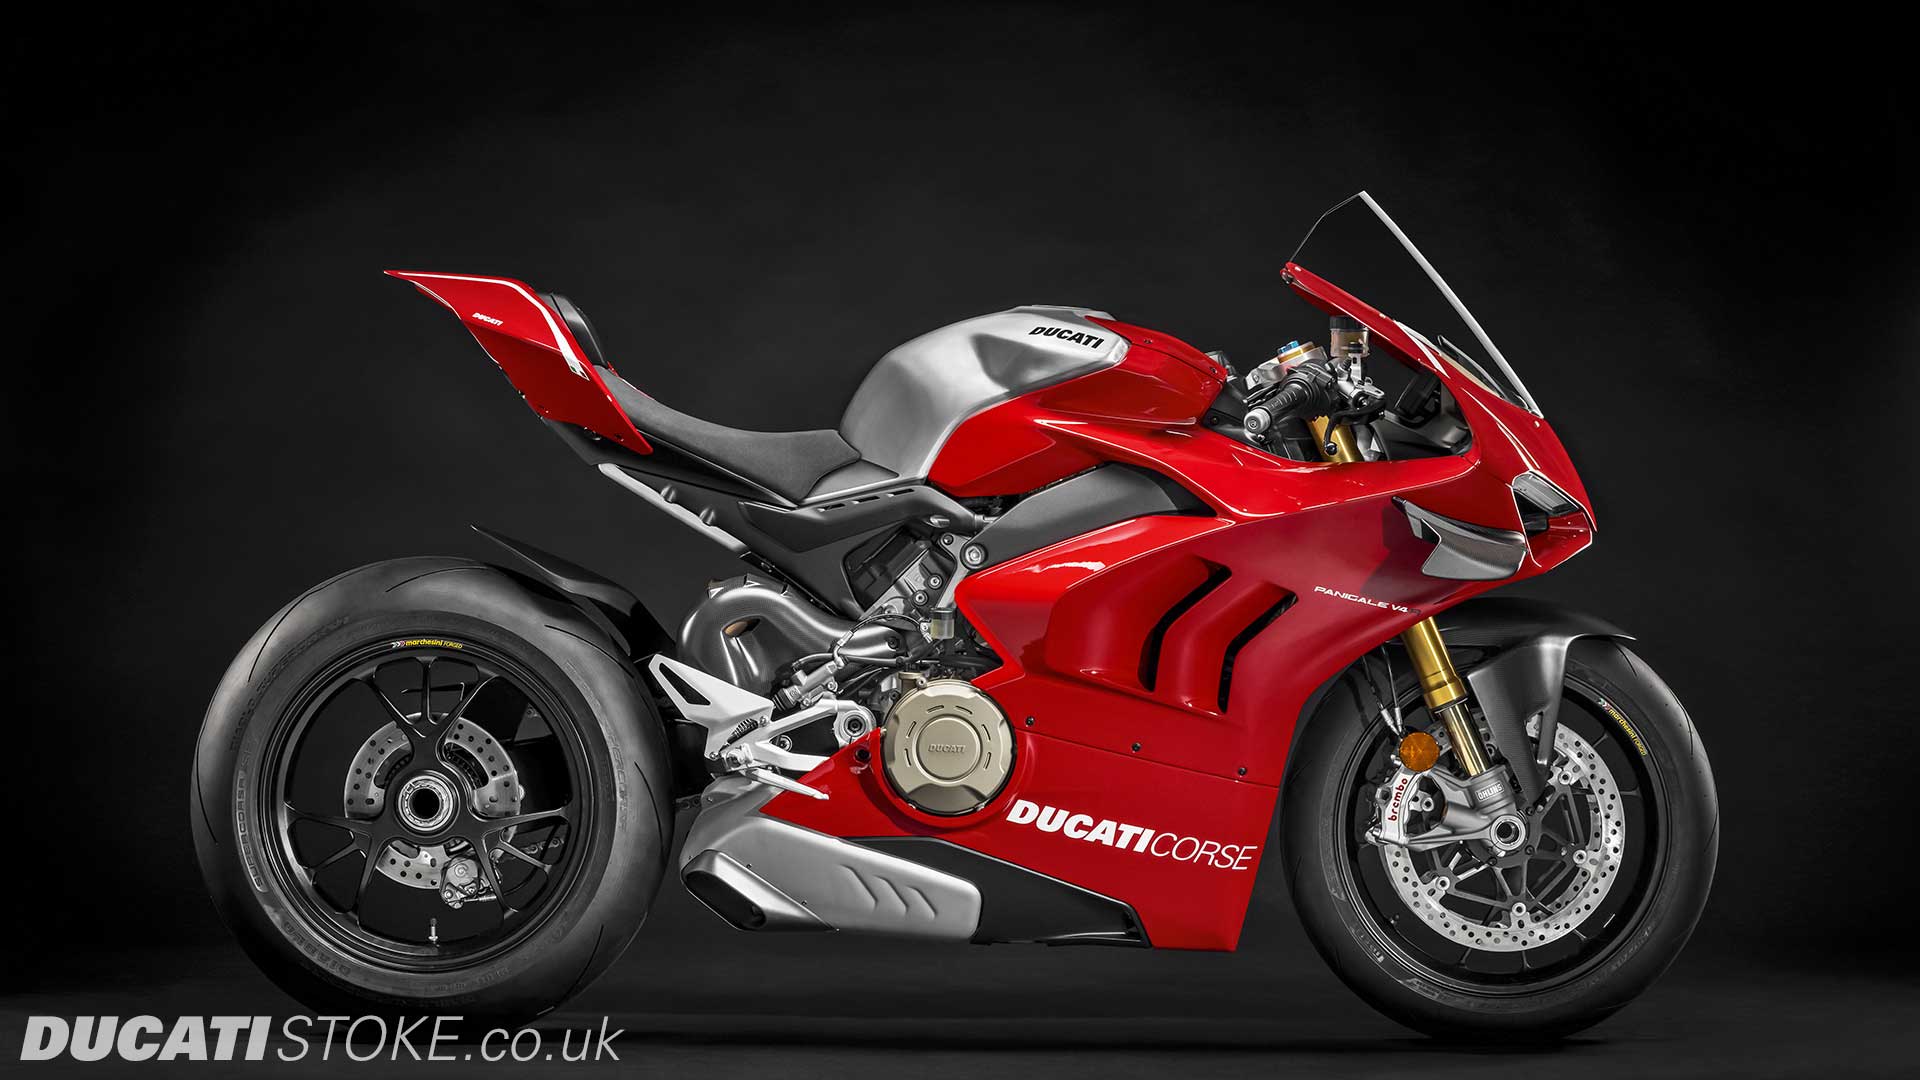 2019 Ducati Panigale V4 R for sale at Ducati Preston, Lancashire, Scotland